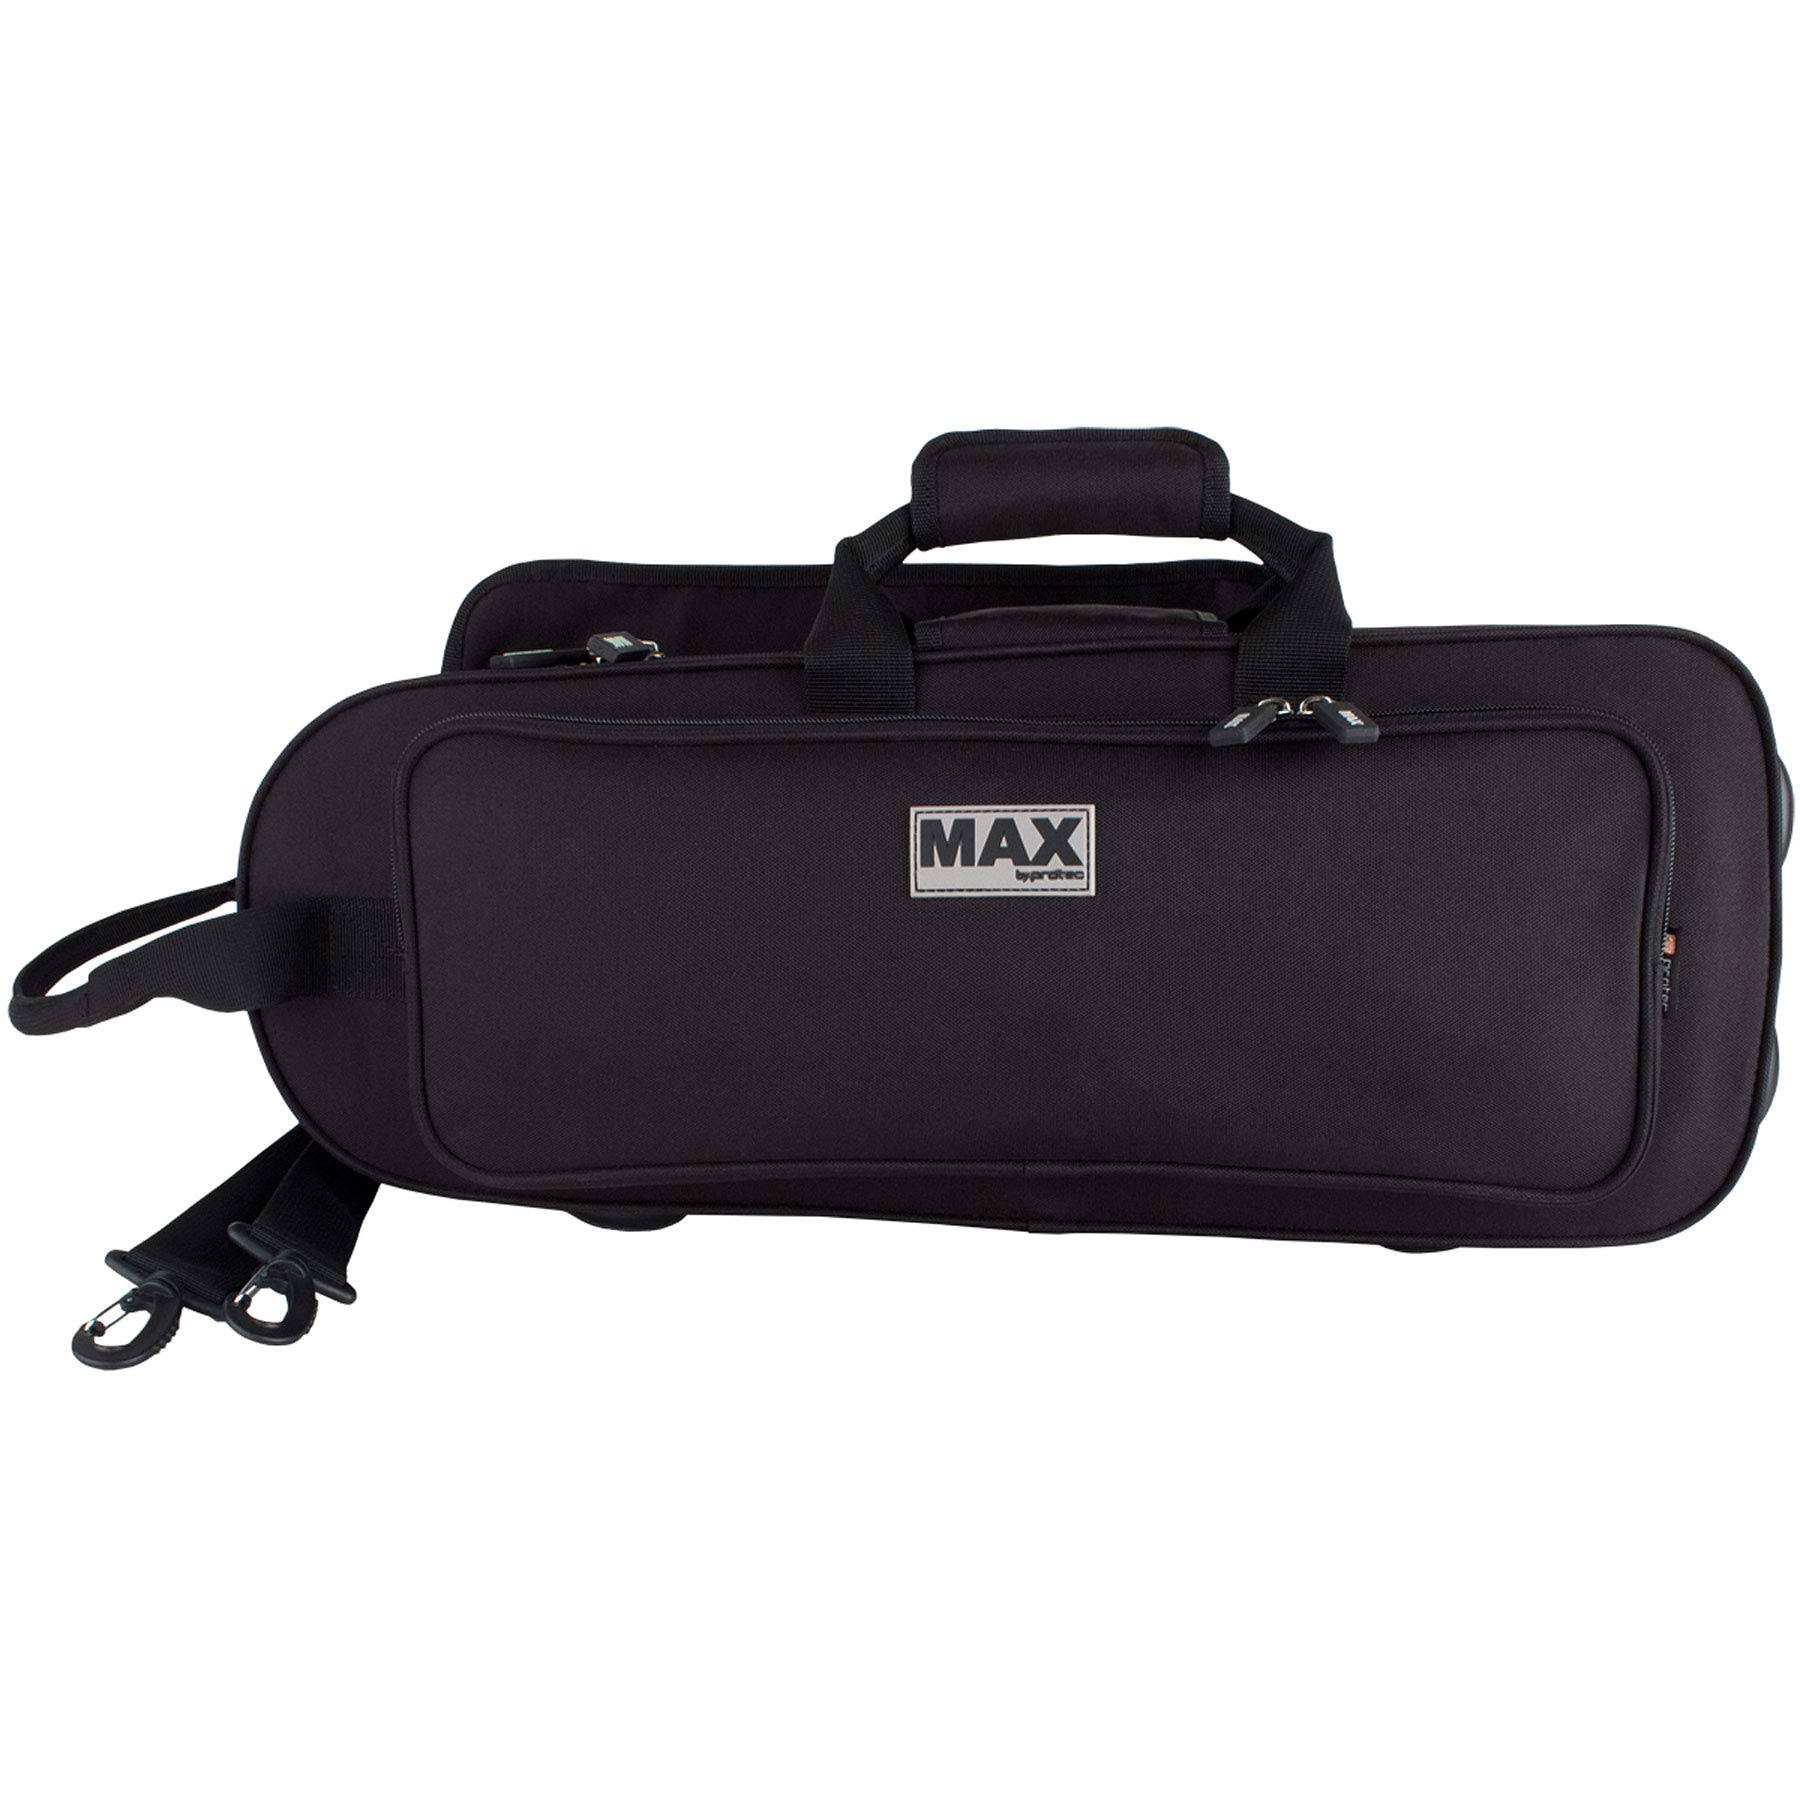 Protec MX301CT Max Contoured Trumpet Case, Black